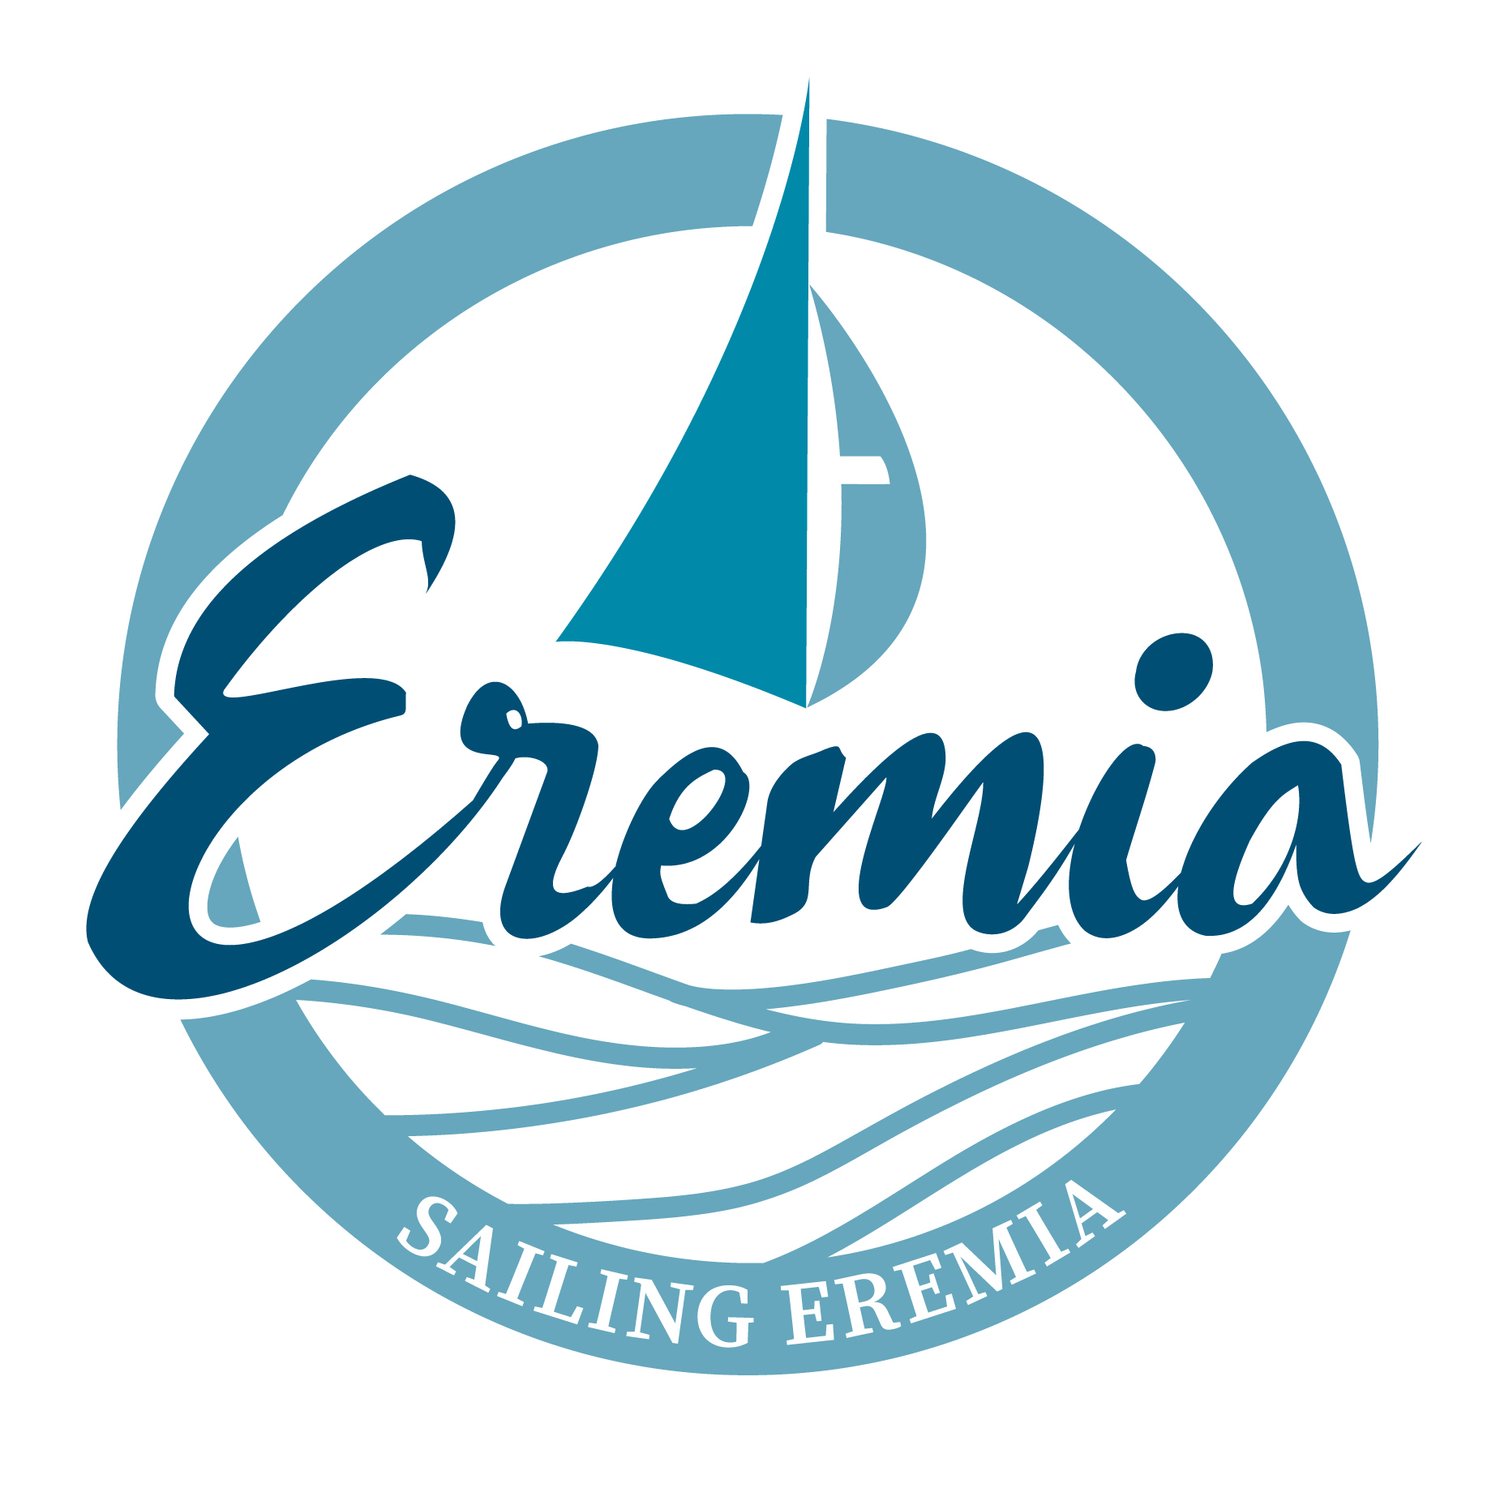 Sailing Eremia